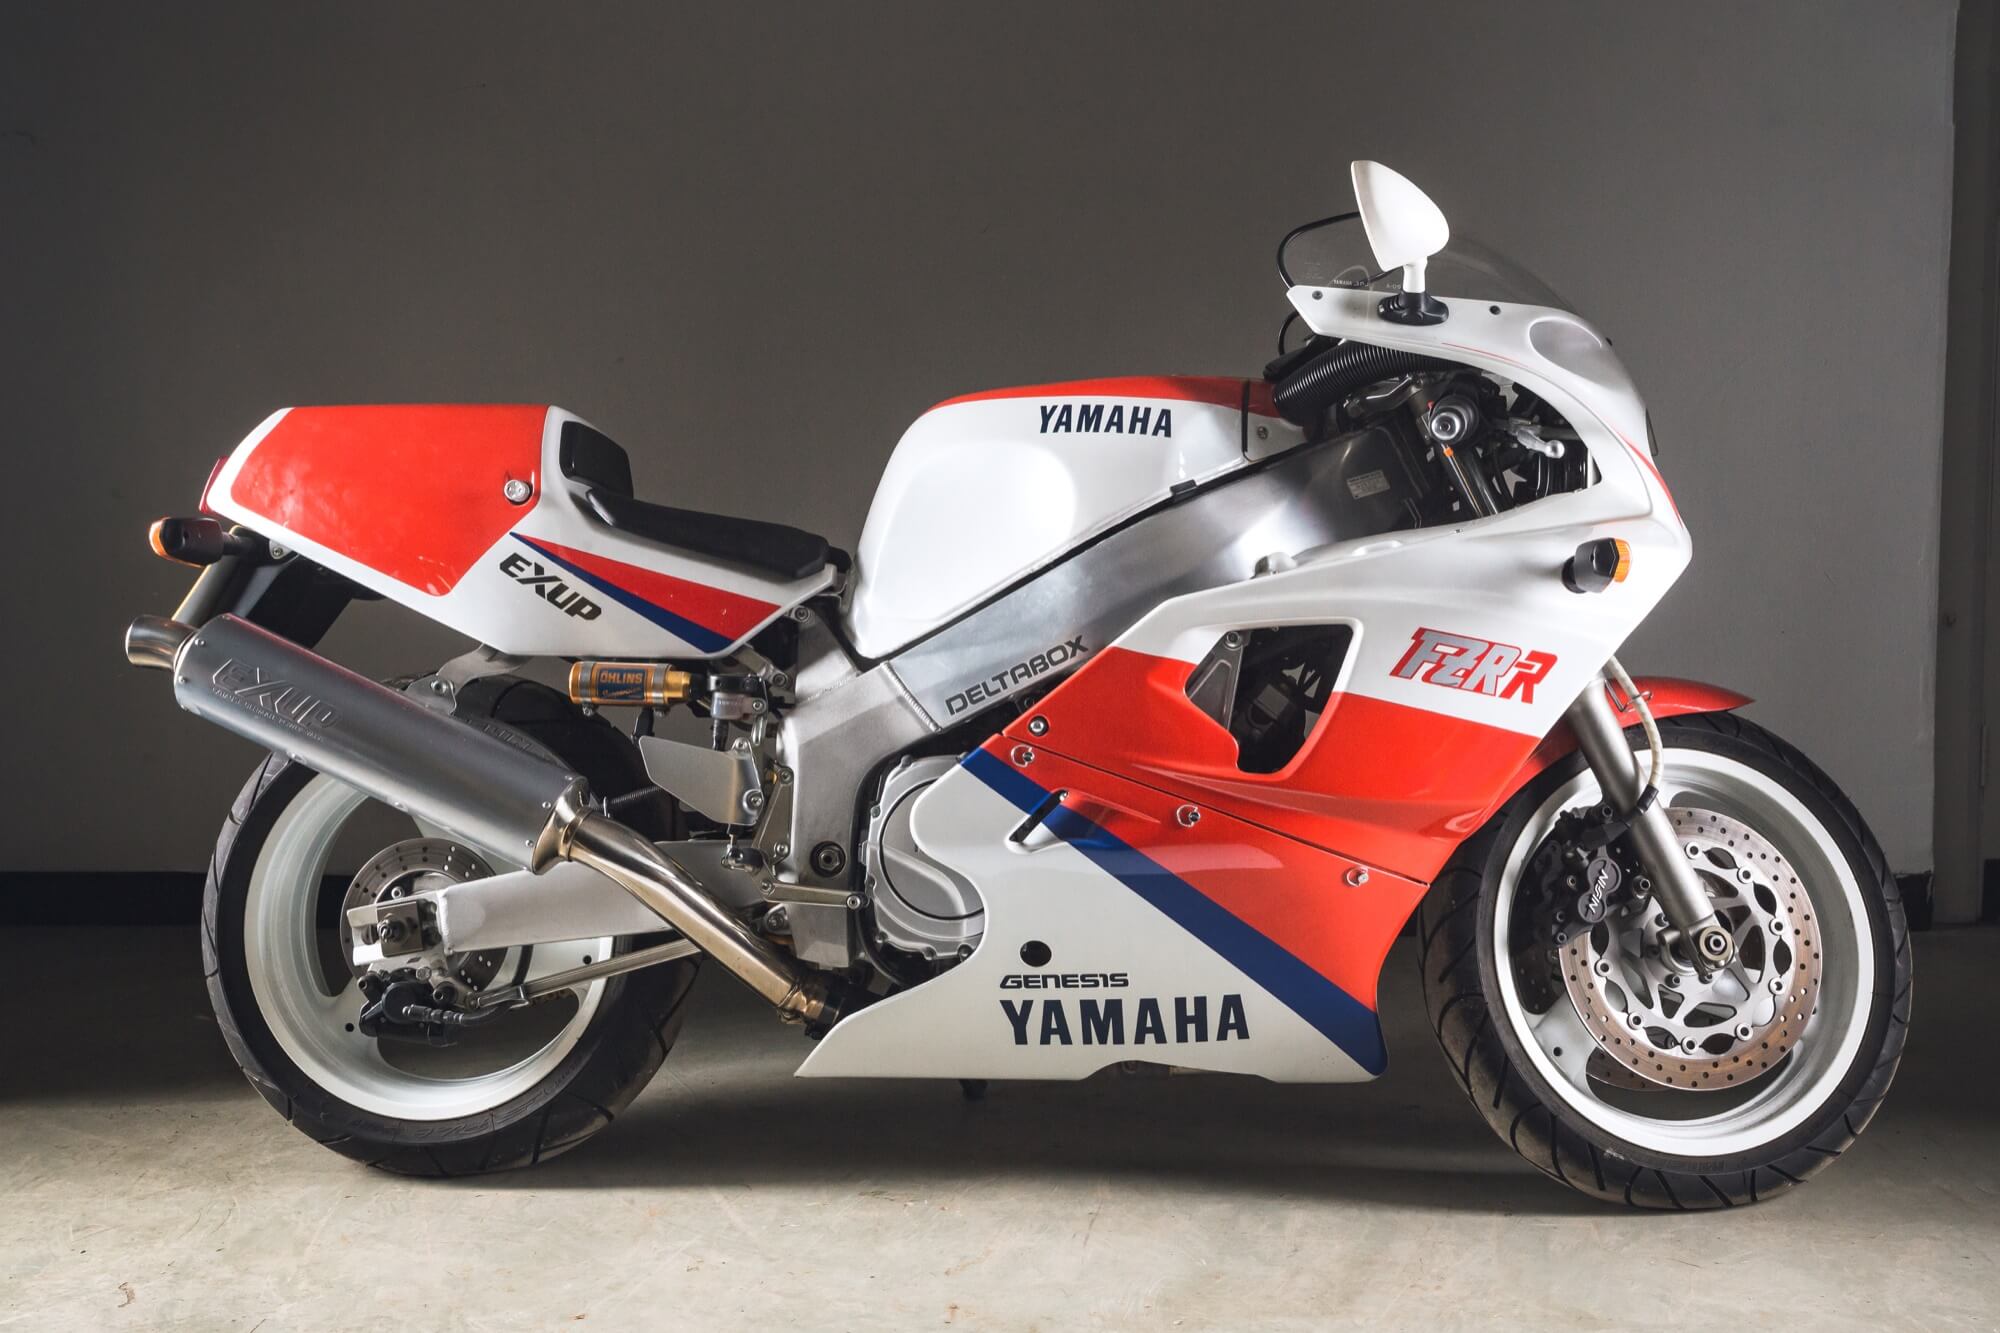  rare Yamaha Motorcycle